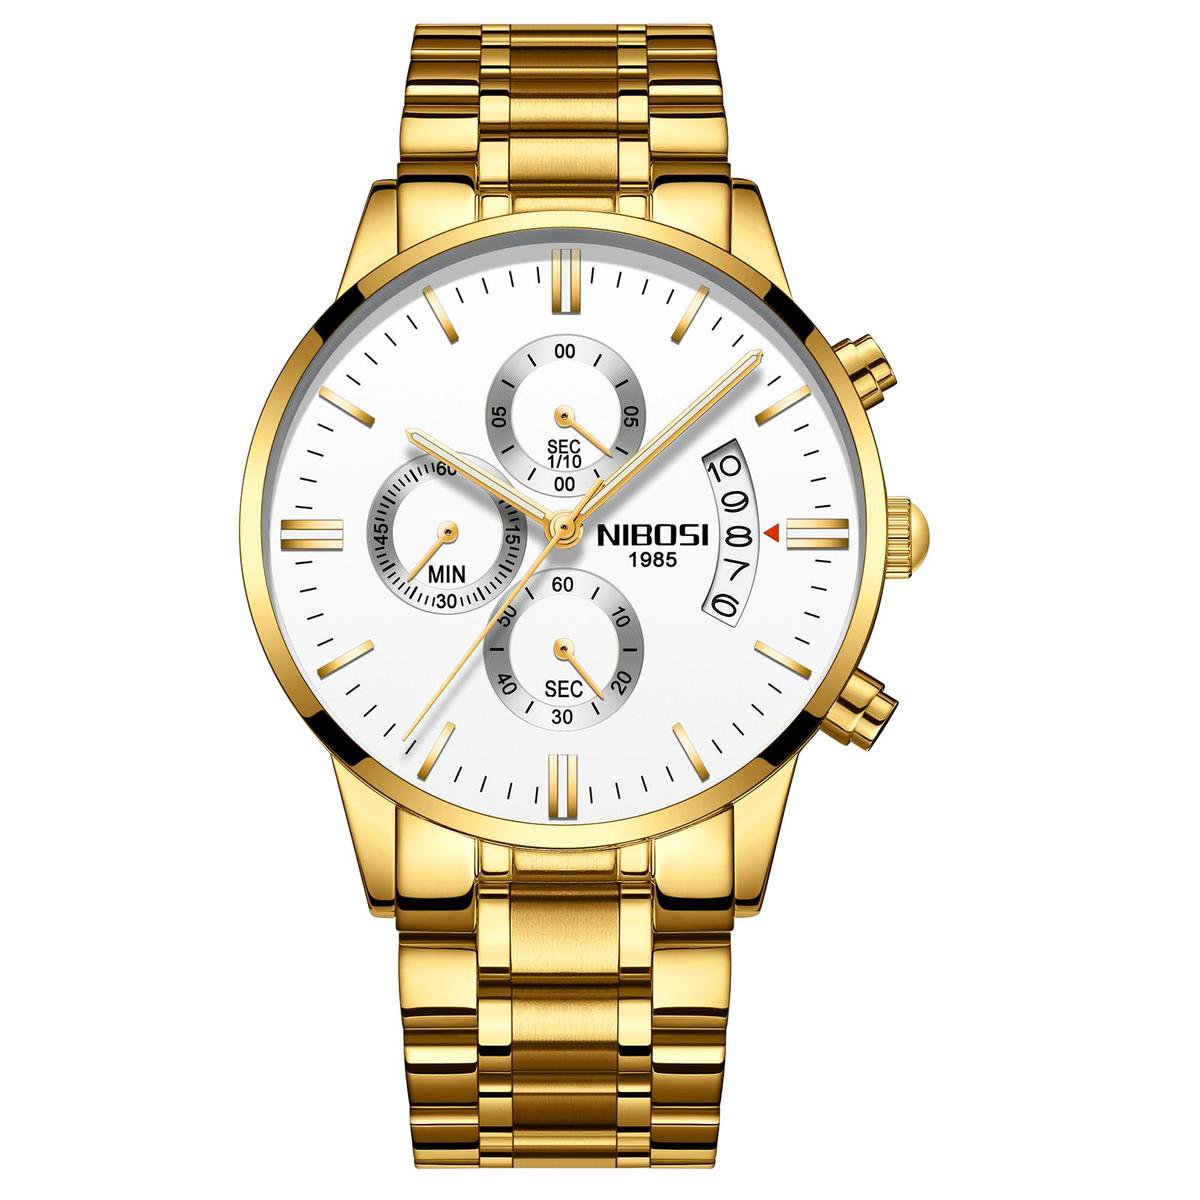 NIBOSI Horloges voor mannen - Horloge mannen - Luxe Goud-Wit Design - Heren horloge - Ø 42 mm - Goud-Wit - Roestvrij Staal - Waterdicht tot 3 bar - Chronograaf - Geschenkset met verstelbare pin